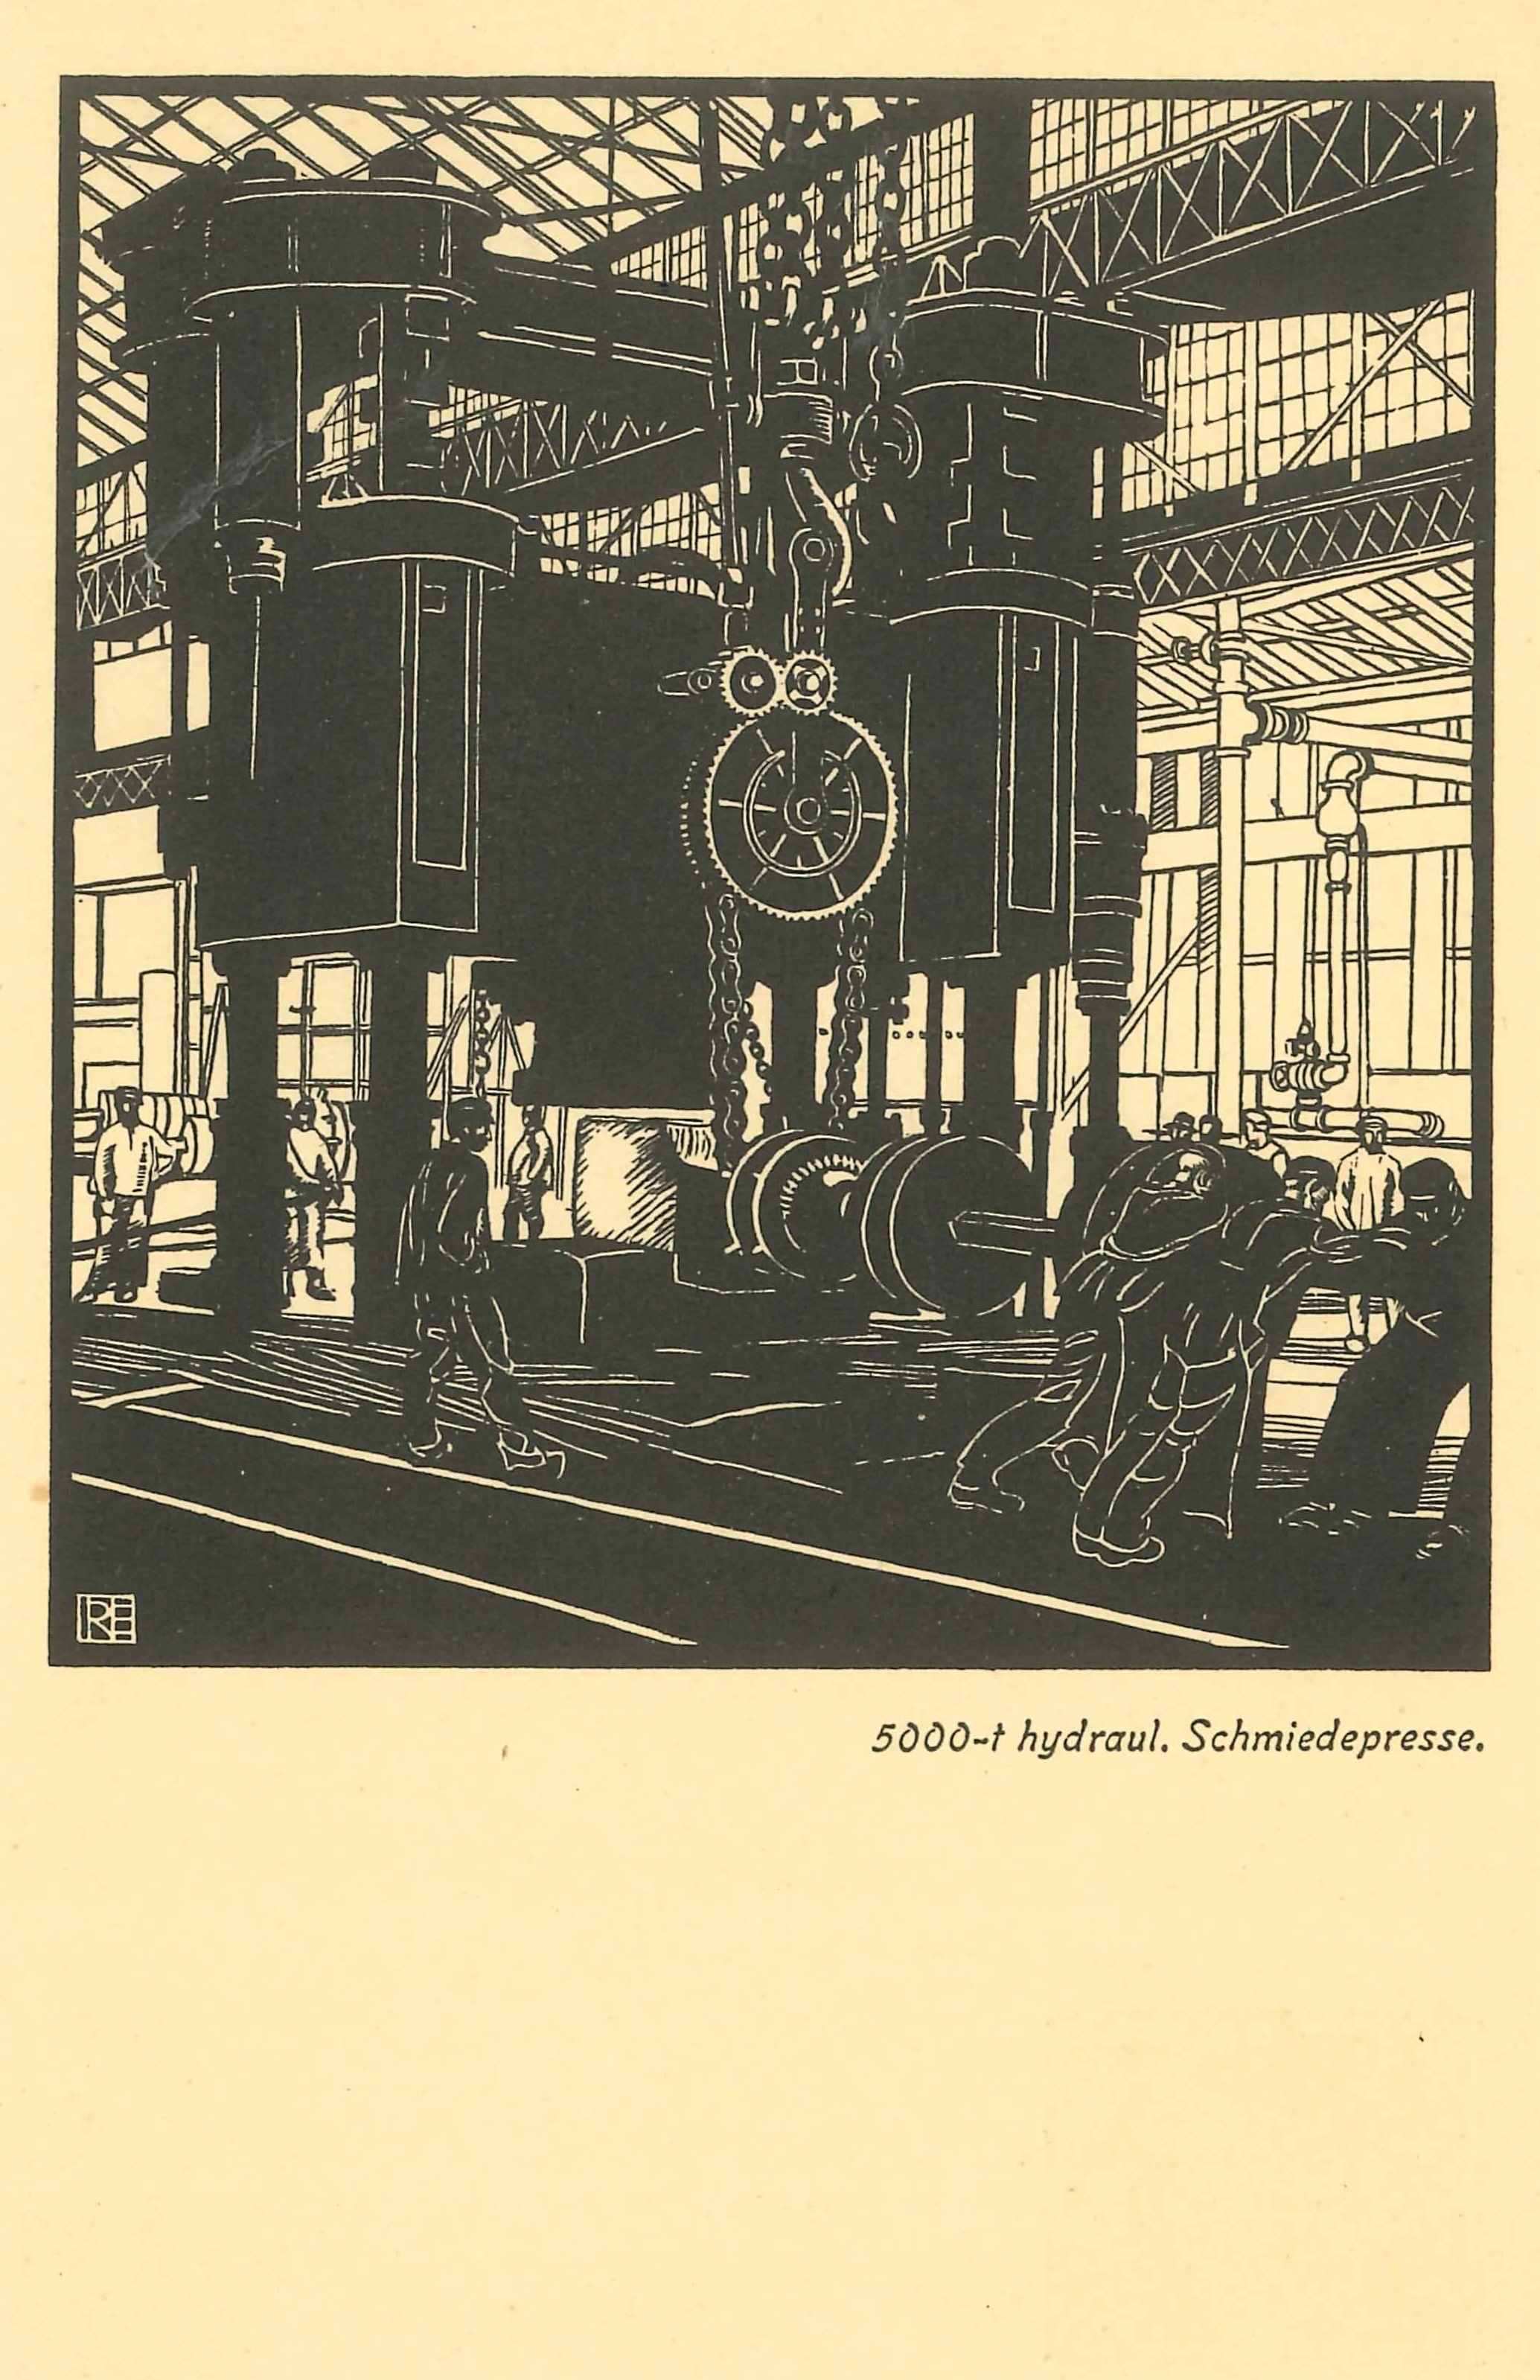 Postkarte, "5000 Tonnen hydraulische Schmiedepresse" der Friedrich Krupp A.G in Essen, 1911 (REM CC BY-NC-SA)